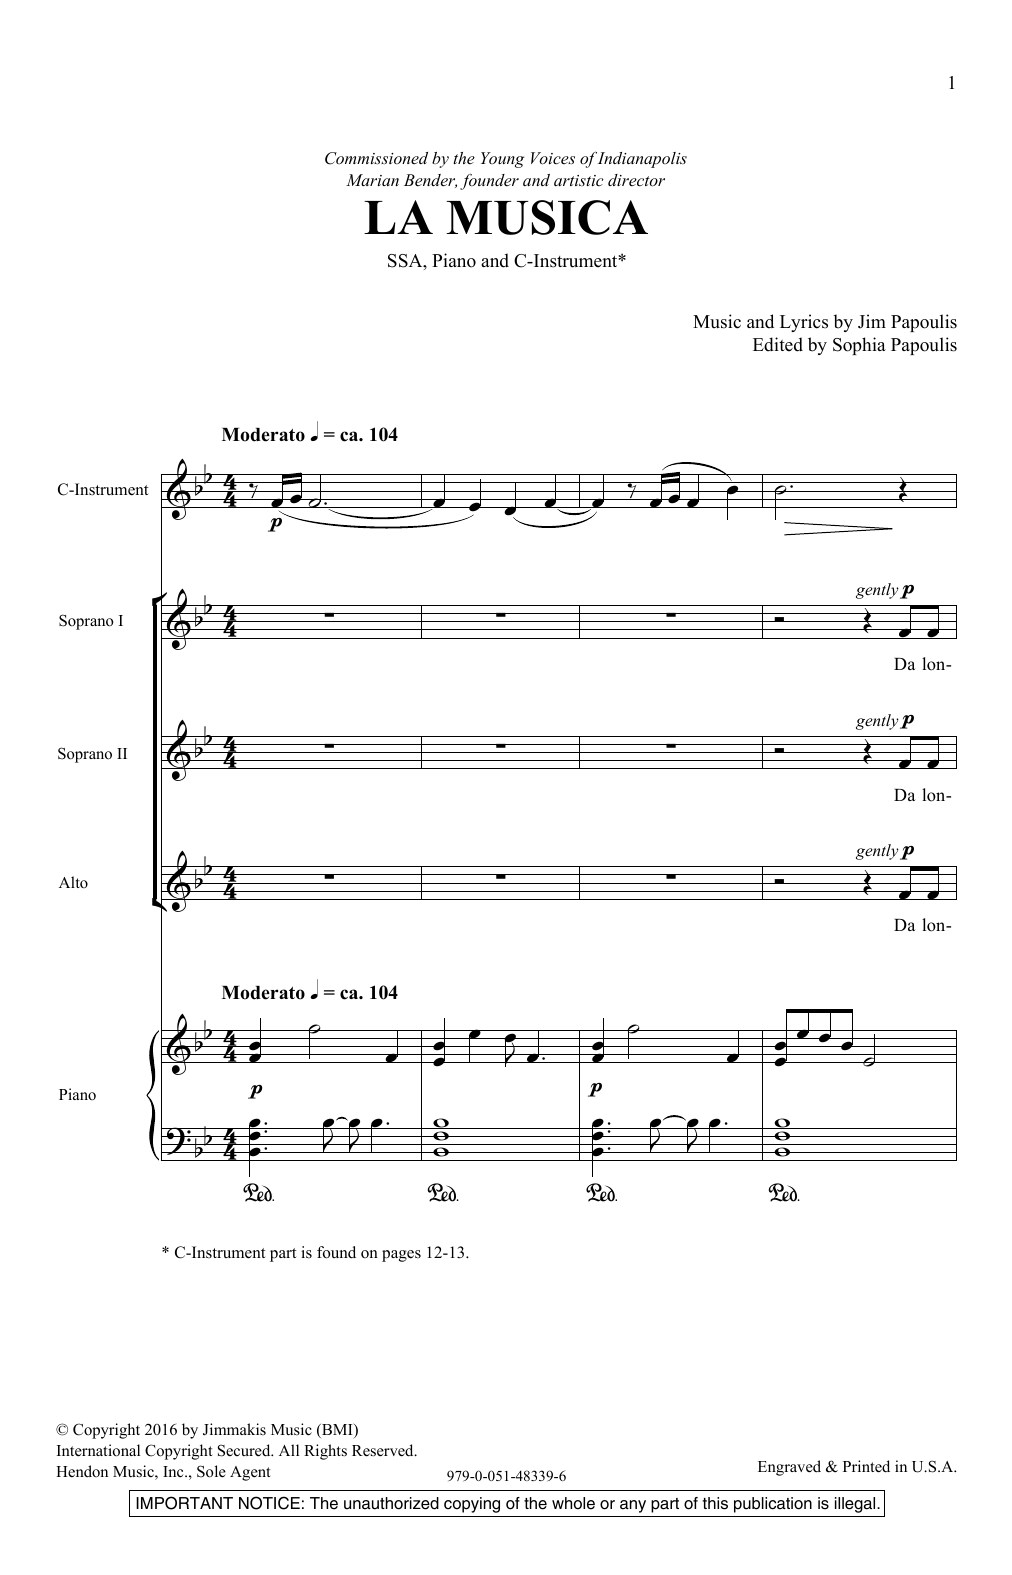 Download Jim Papoulis La Musica Sheet Music